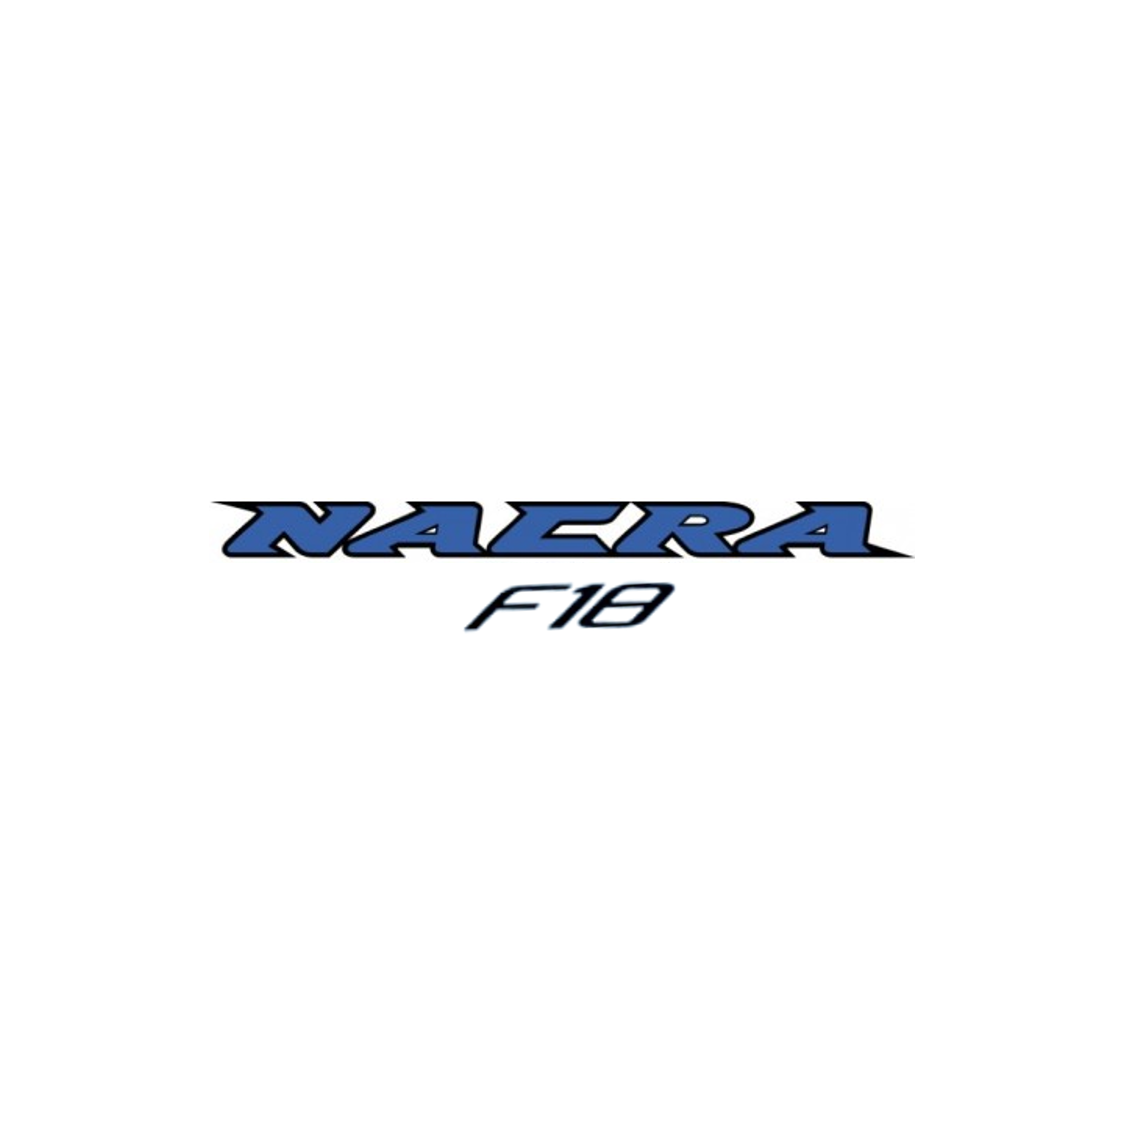 Nacra F18